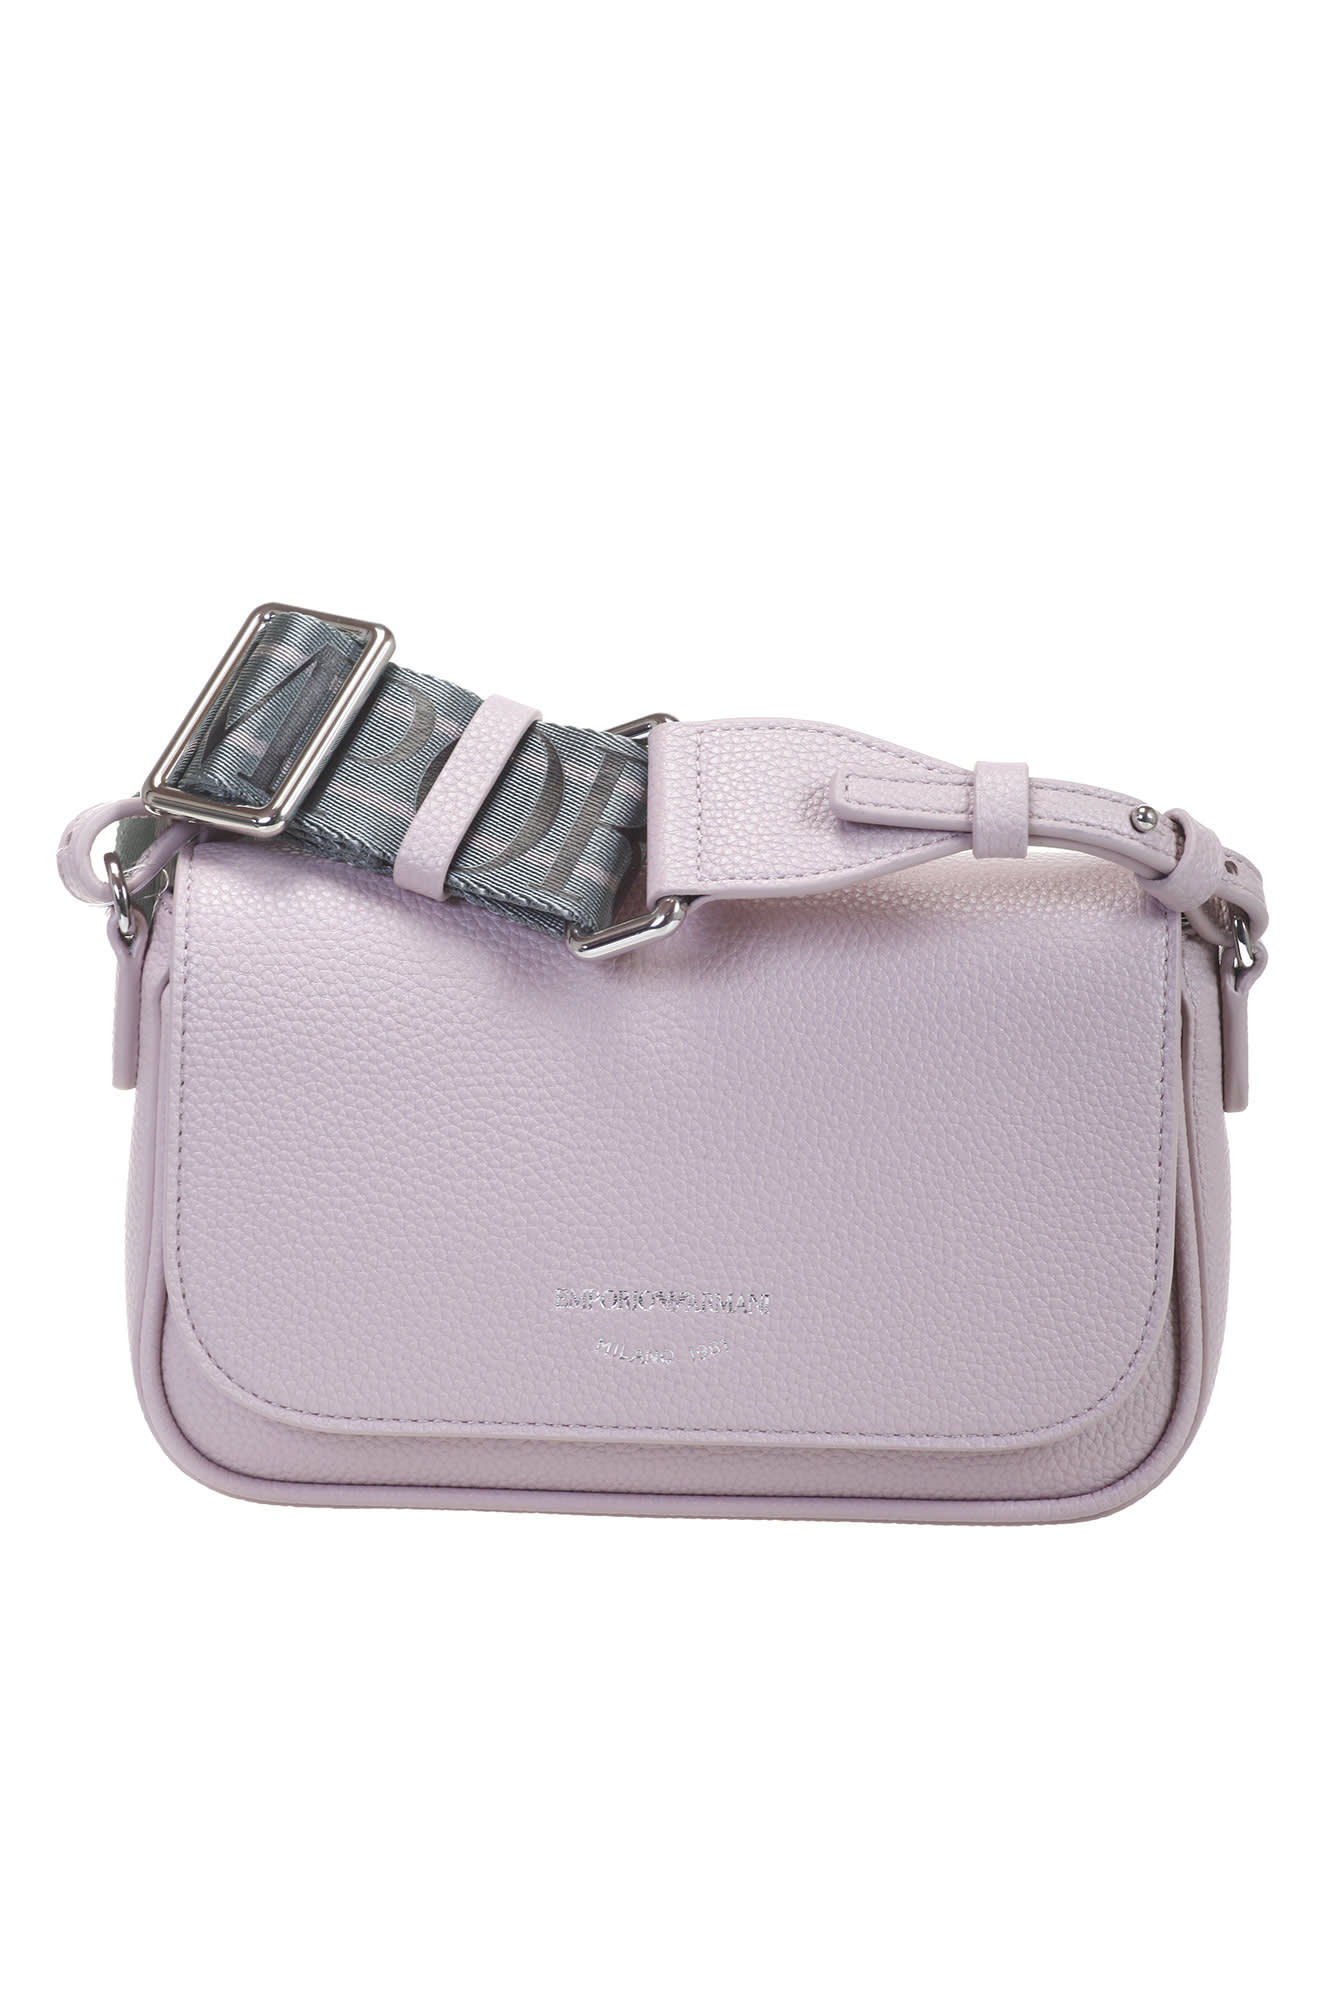 Emporio Armani Mini Bag In Pink